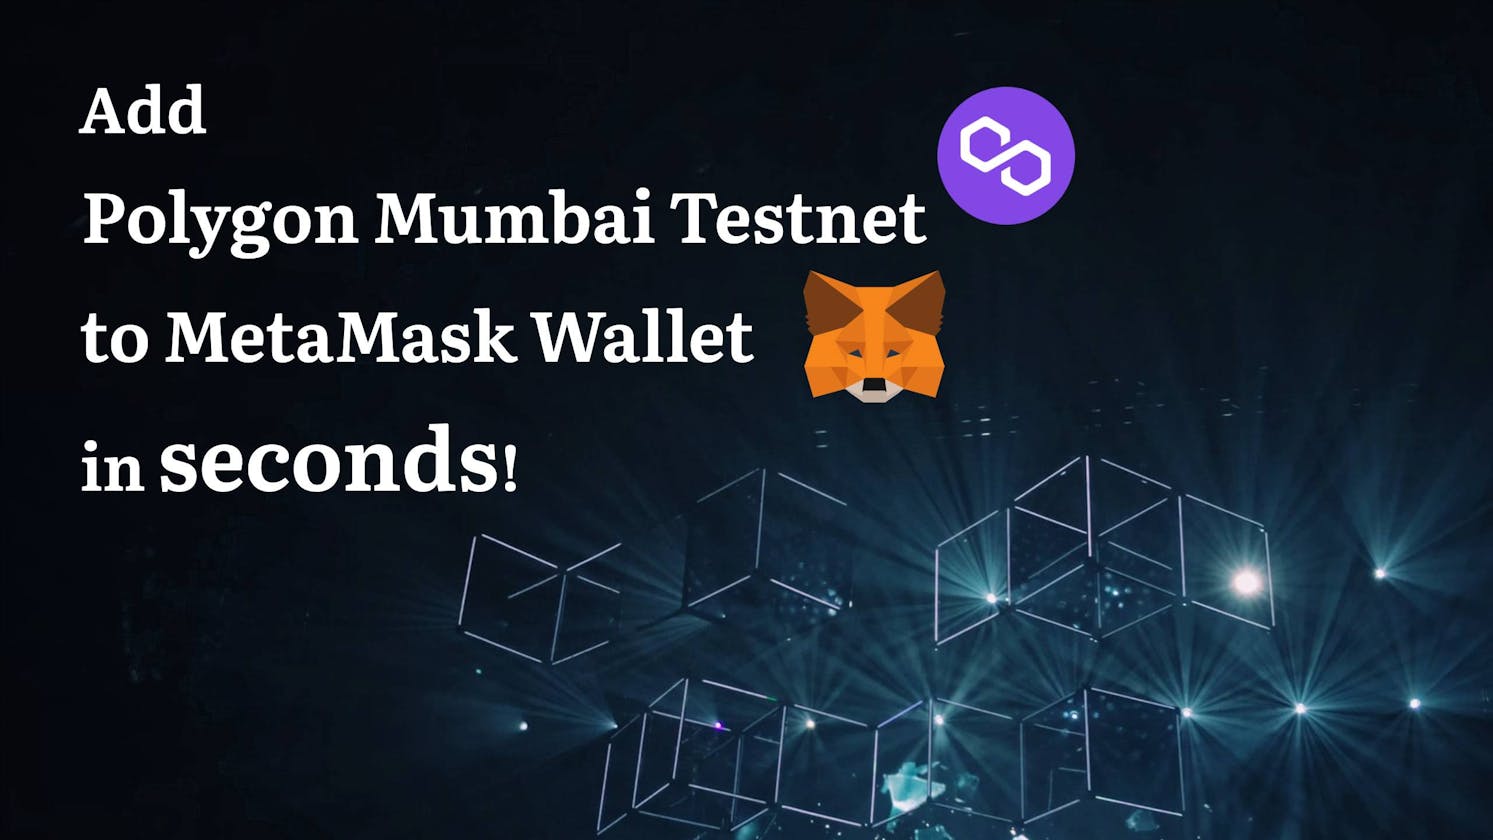 How to add Polygon Mumbai Testnet to MetaMask & get free test Matics